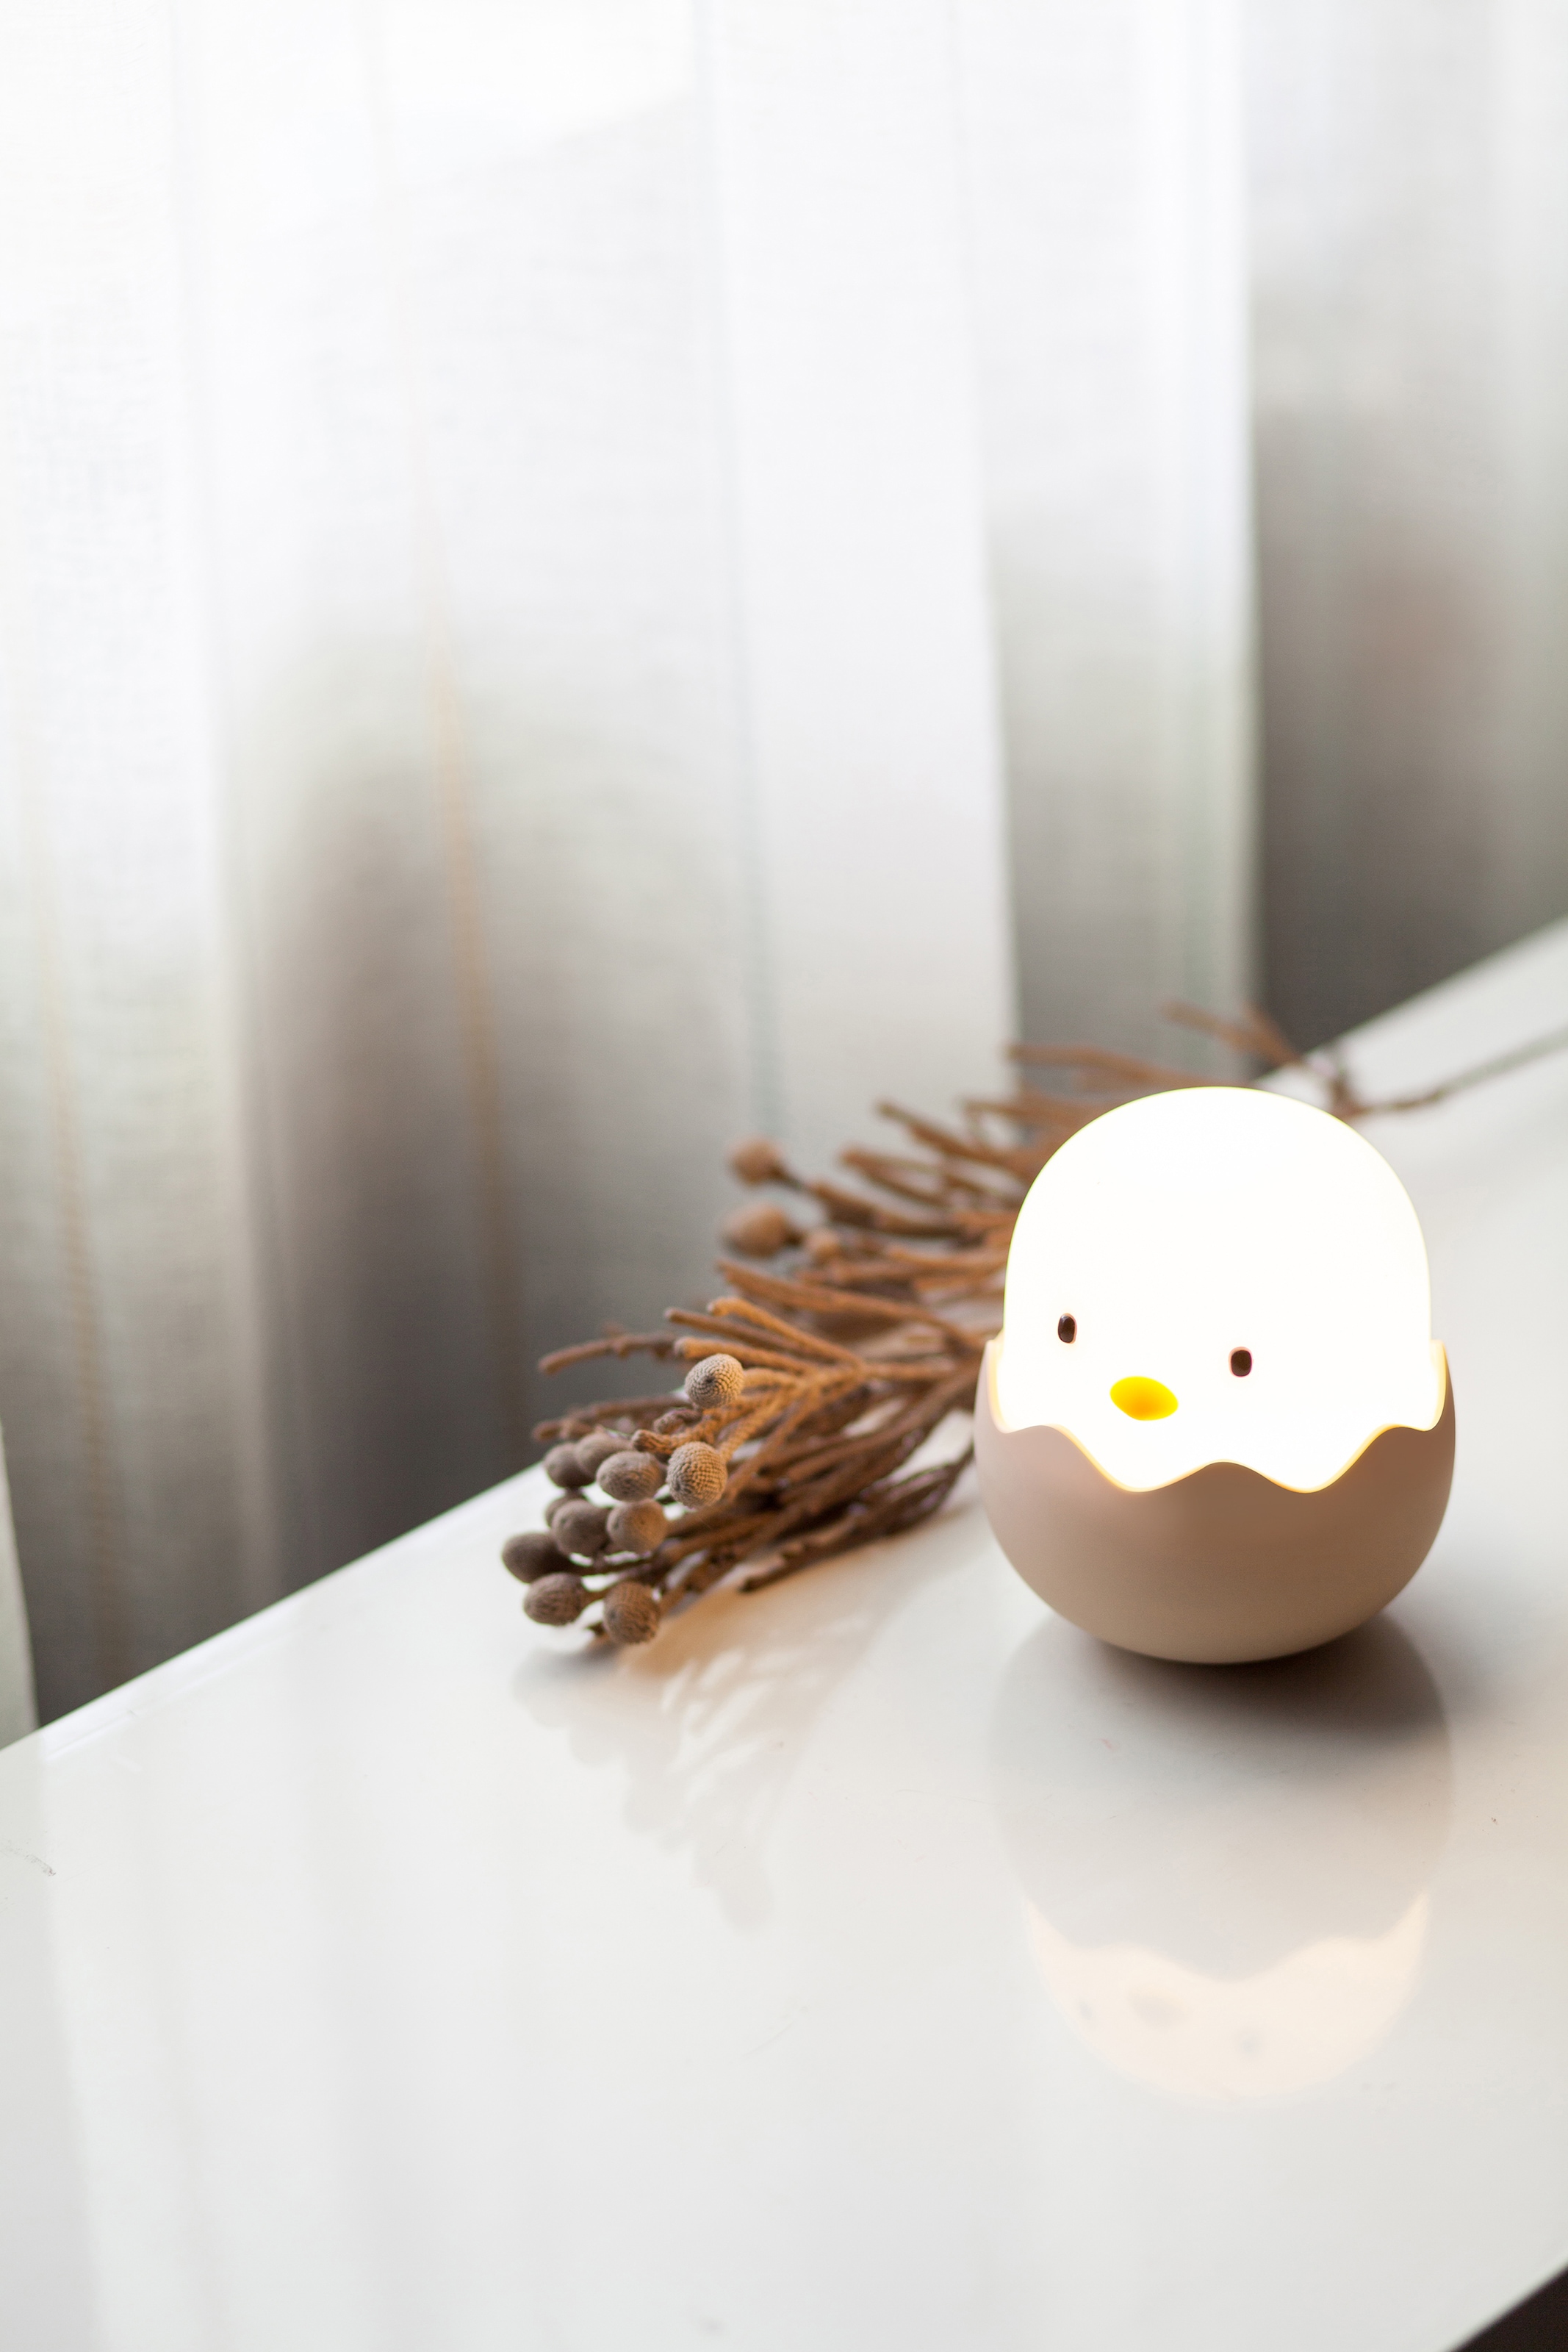 niermann LED Nachtlicht »Eggy Egg«, 1 flammig-flammig, Nachtlicht Eggy Egg  kaufen im OTTO Online Shop | Nachtlichter